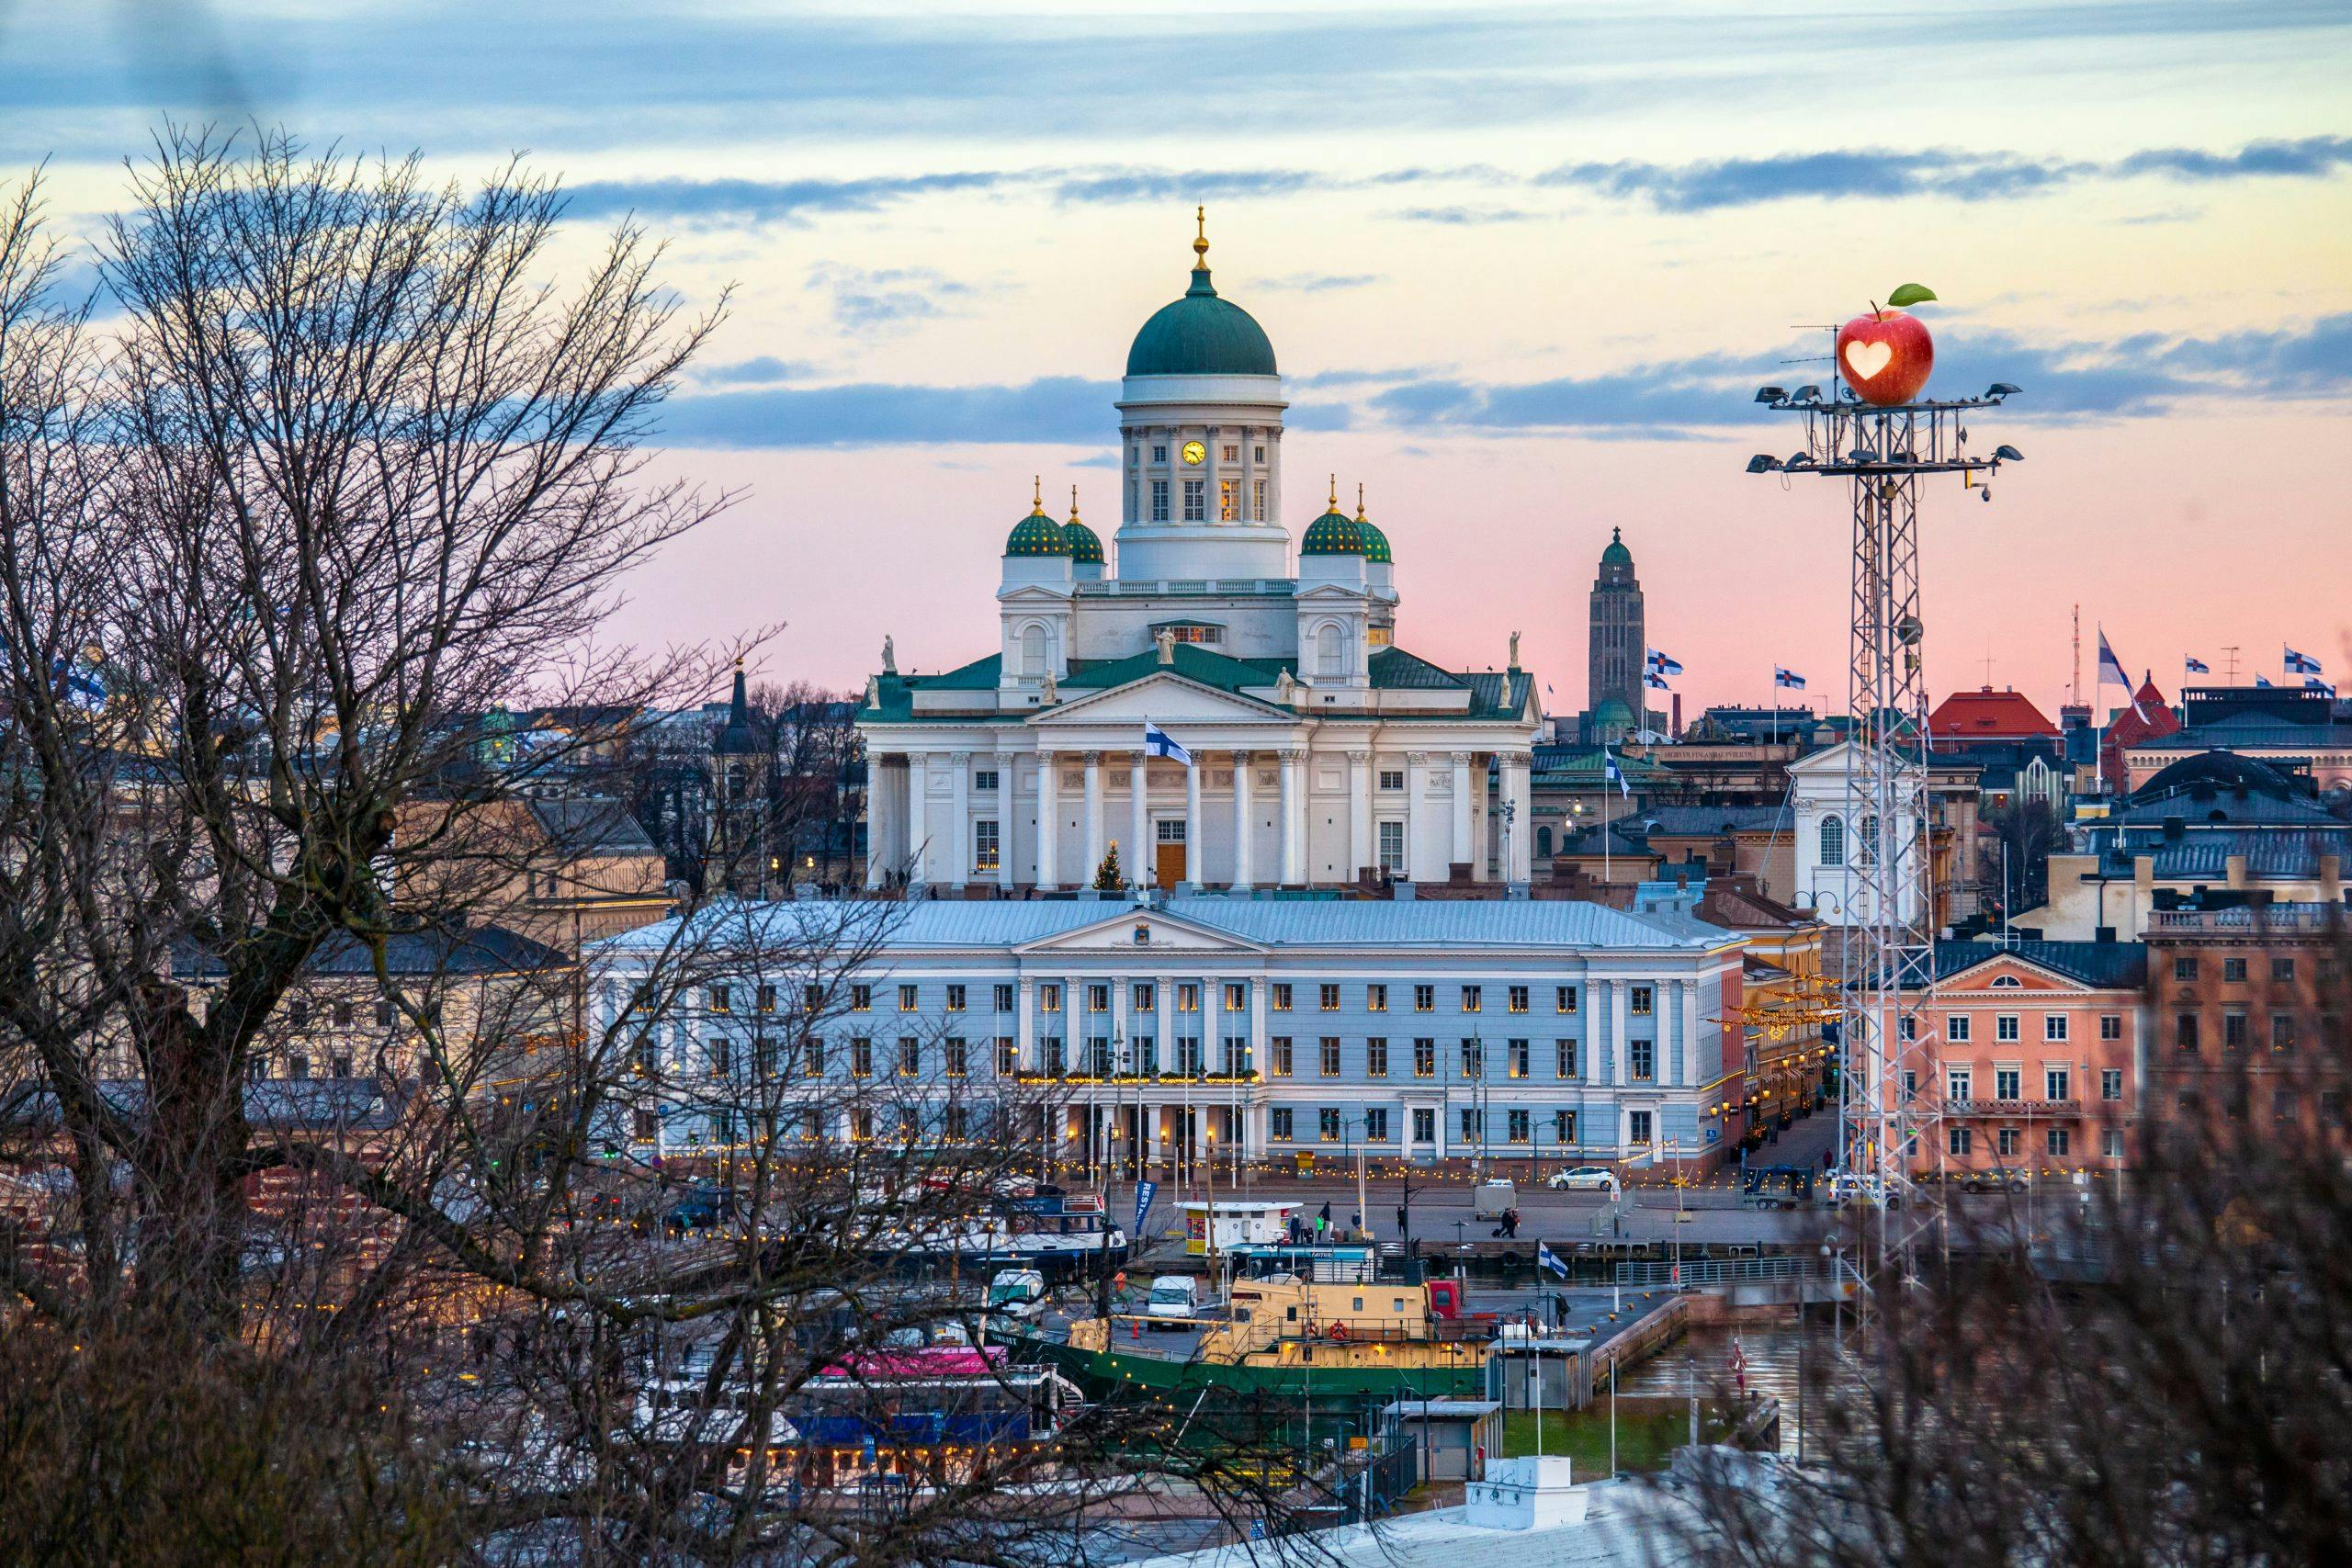 Mikä Suomessa on tänään hyvin ja mikä kaipaa muutosta? Lue, mitä omppulaiset ajattelevat itsenäisyyspäivän kynnyksellä!